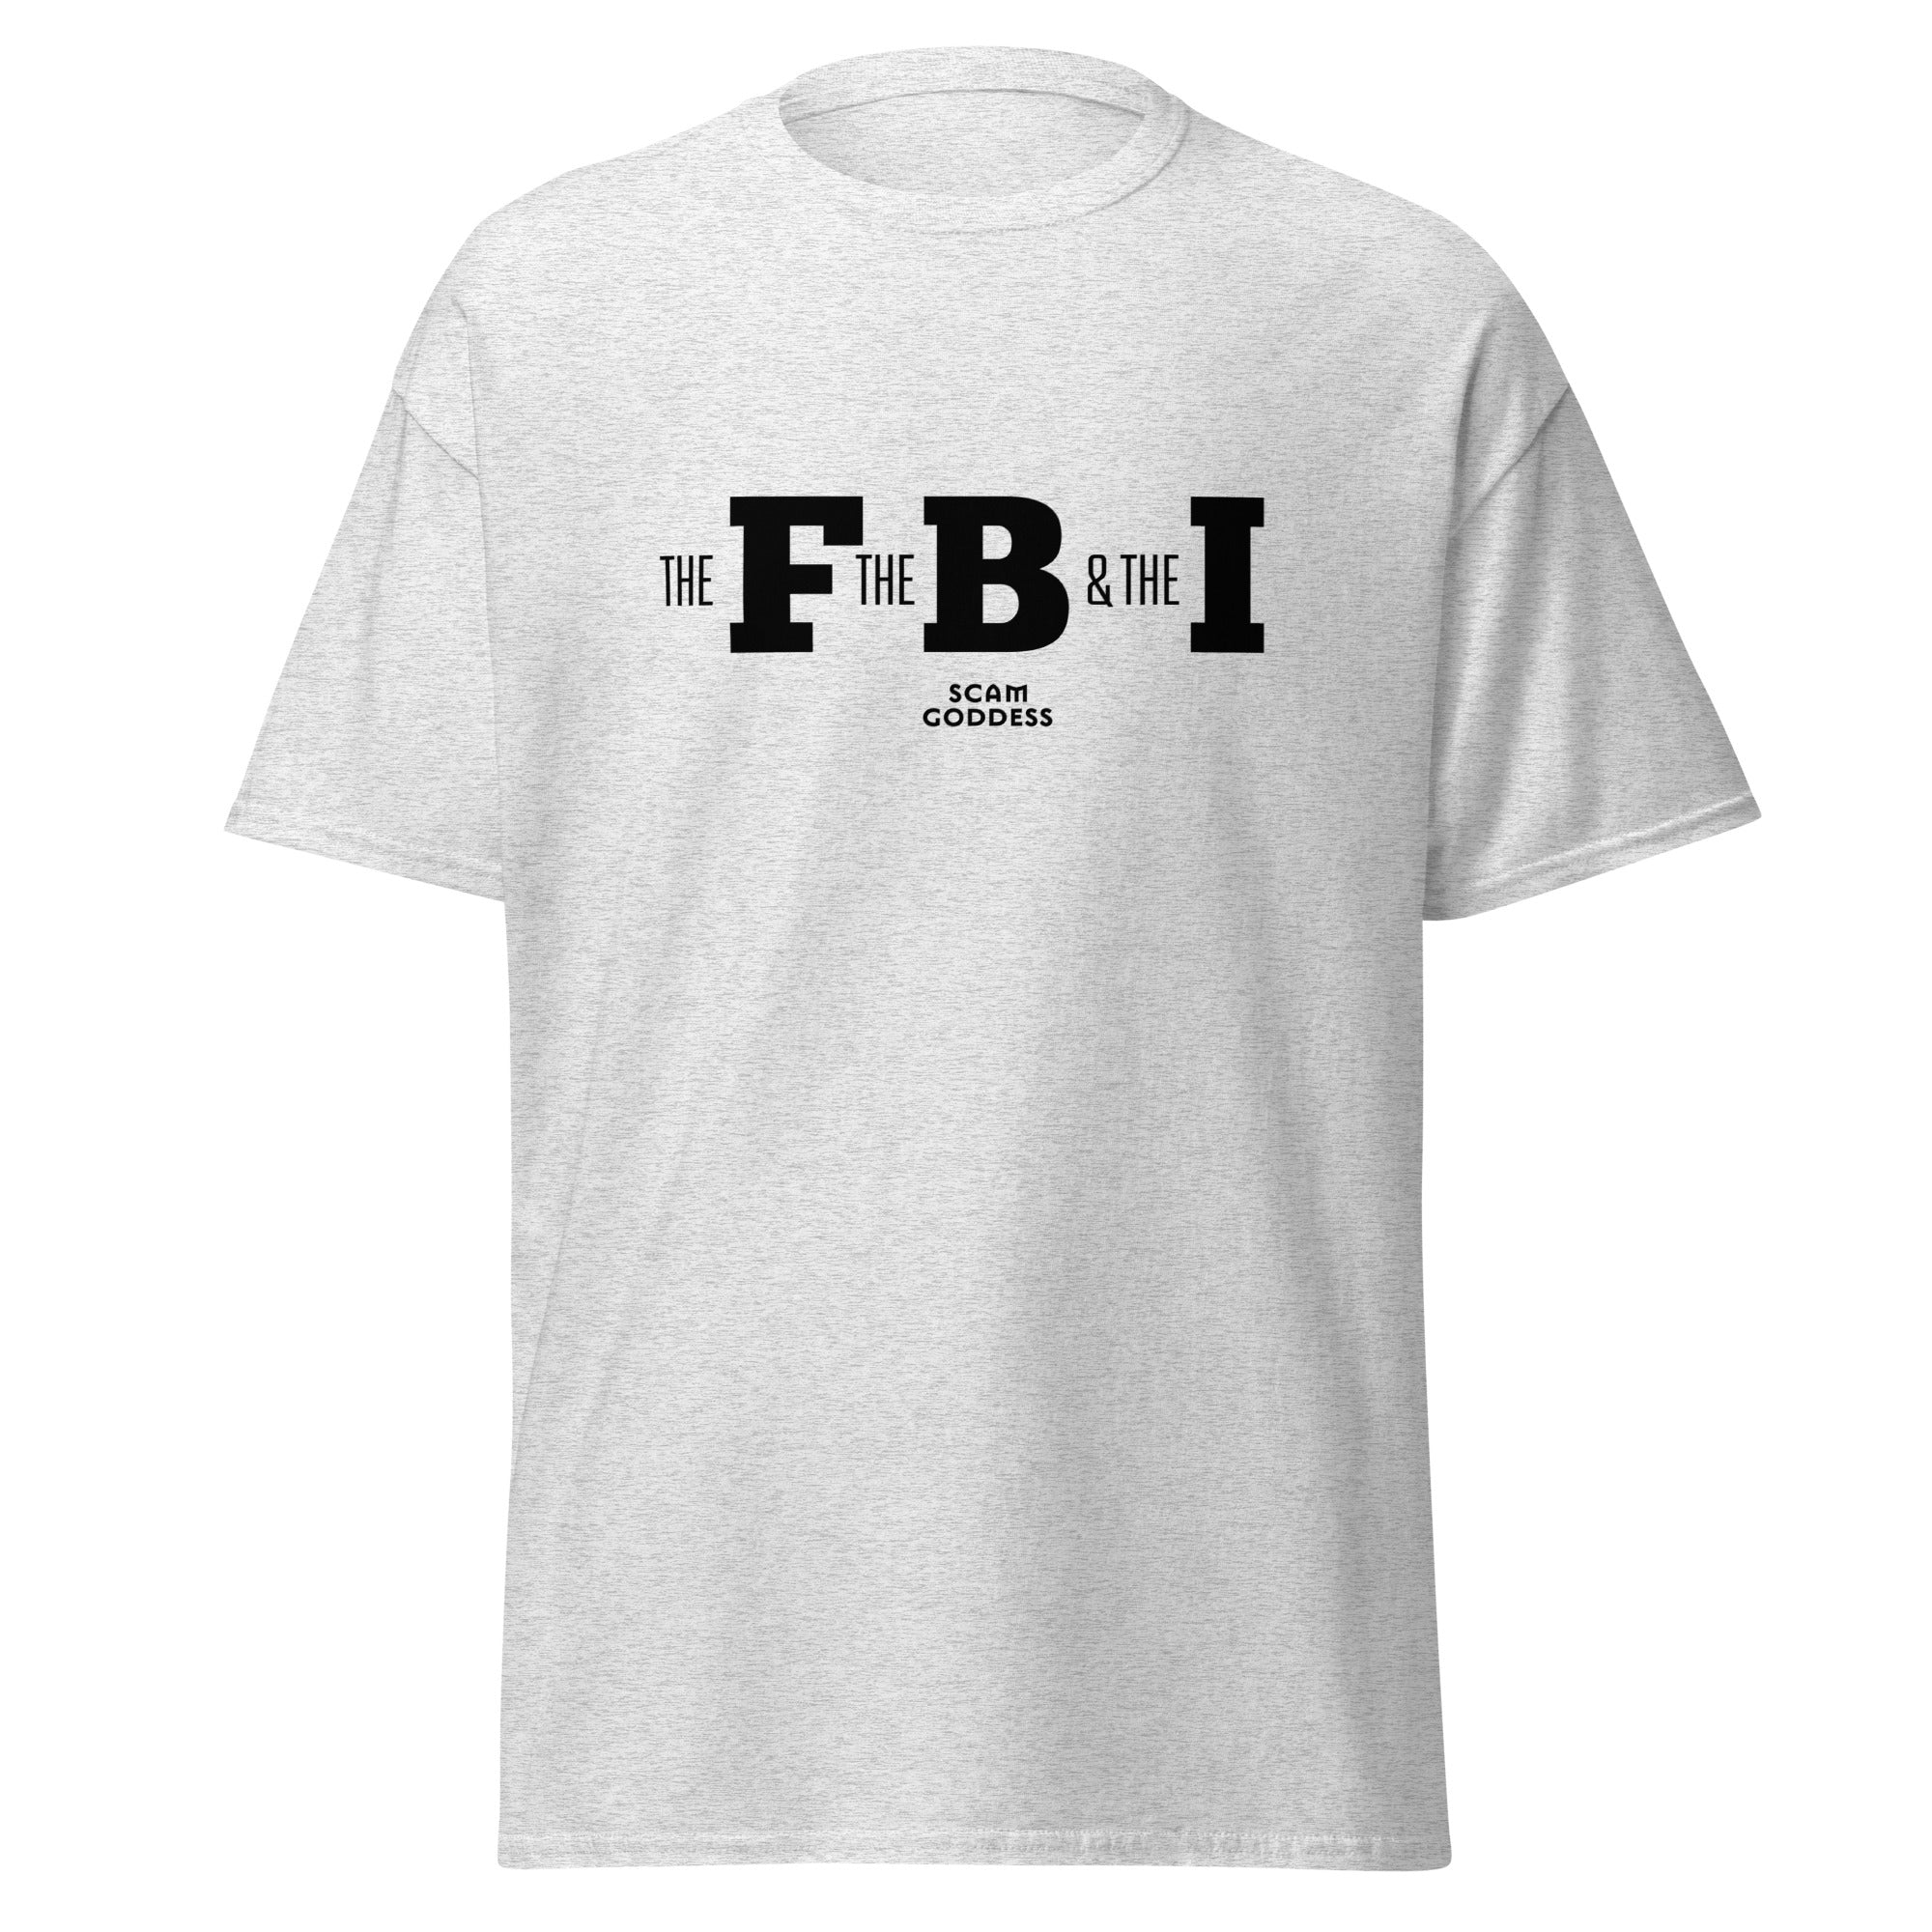 Scam Goddess: The FBI T-shirt